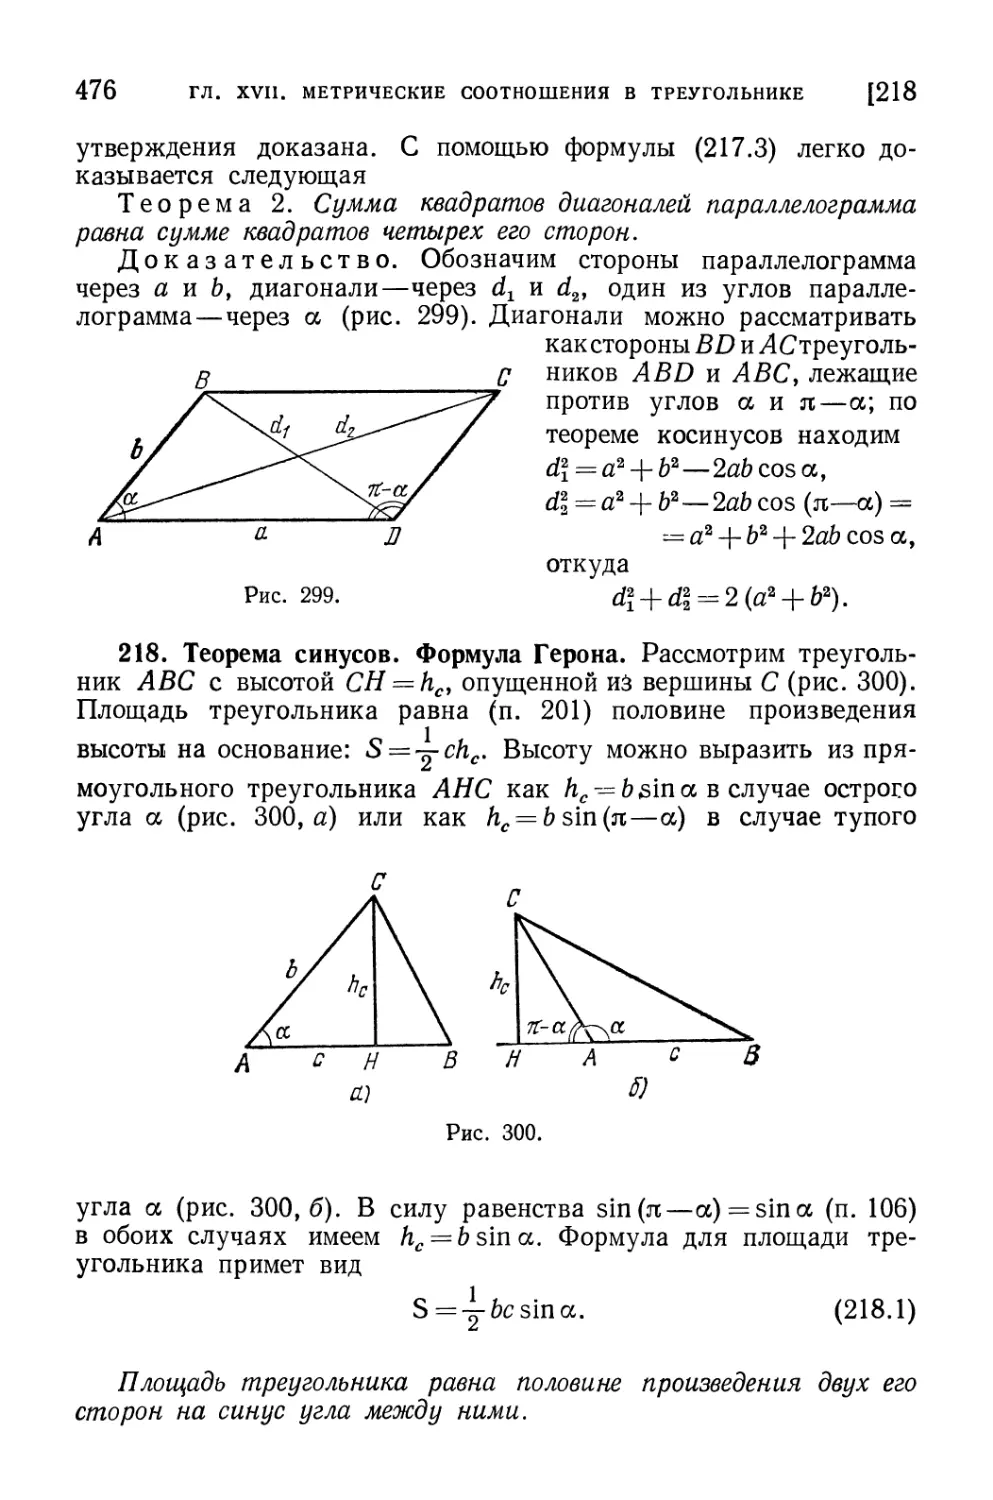 218. Теорема синусов. Формула Герона